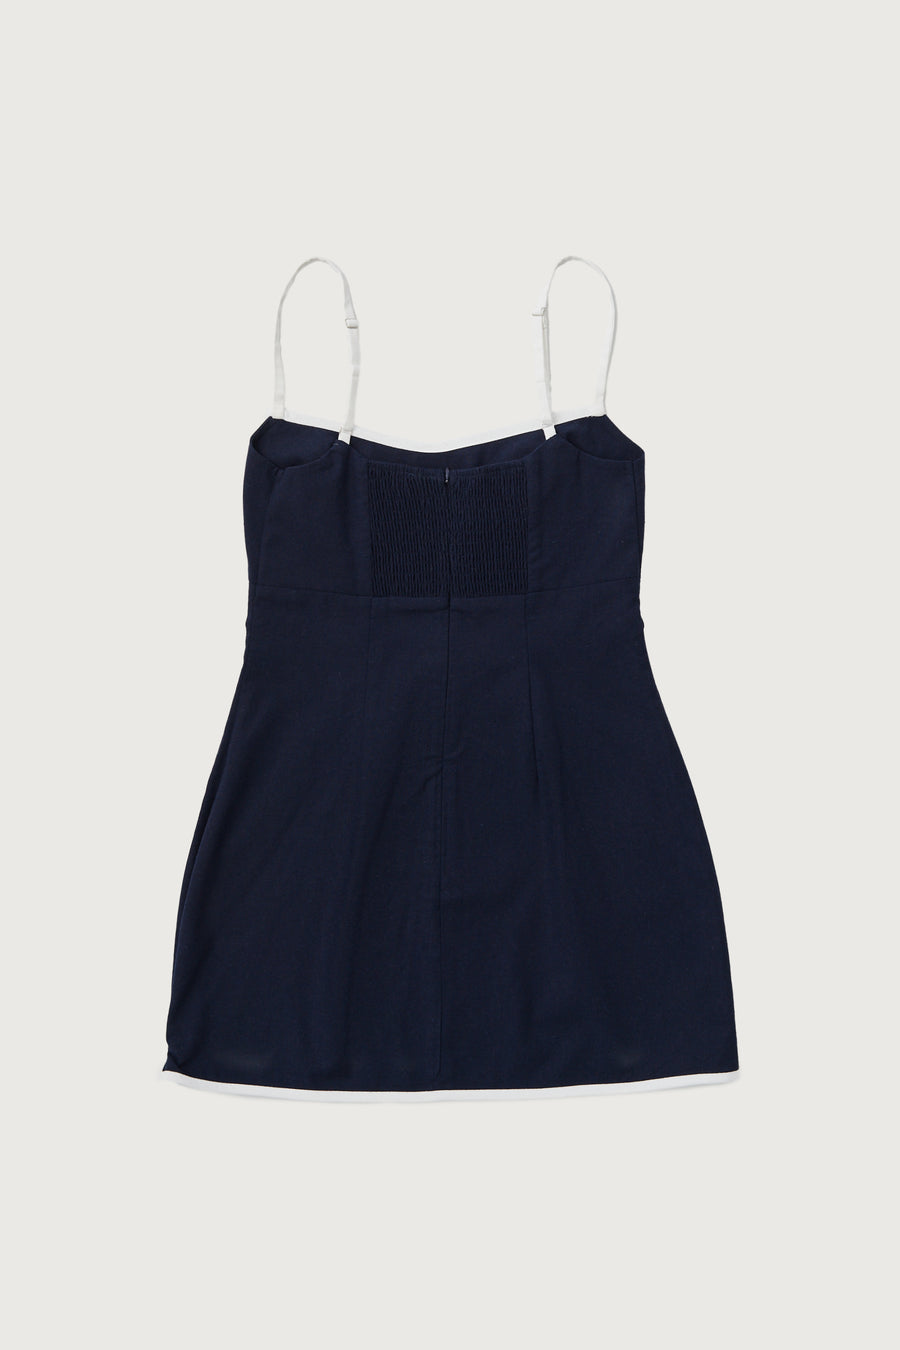 Linen Contrast Mini Dress + Navy - Little Puffy